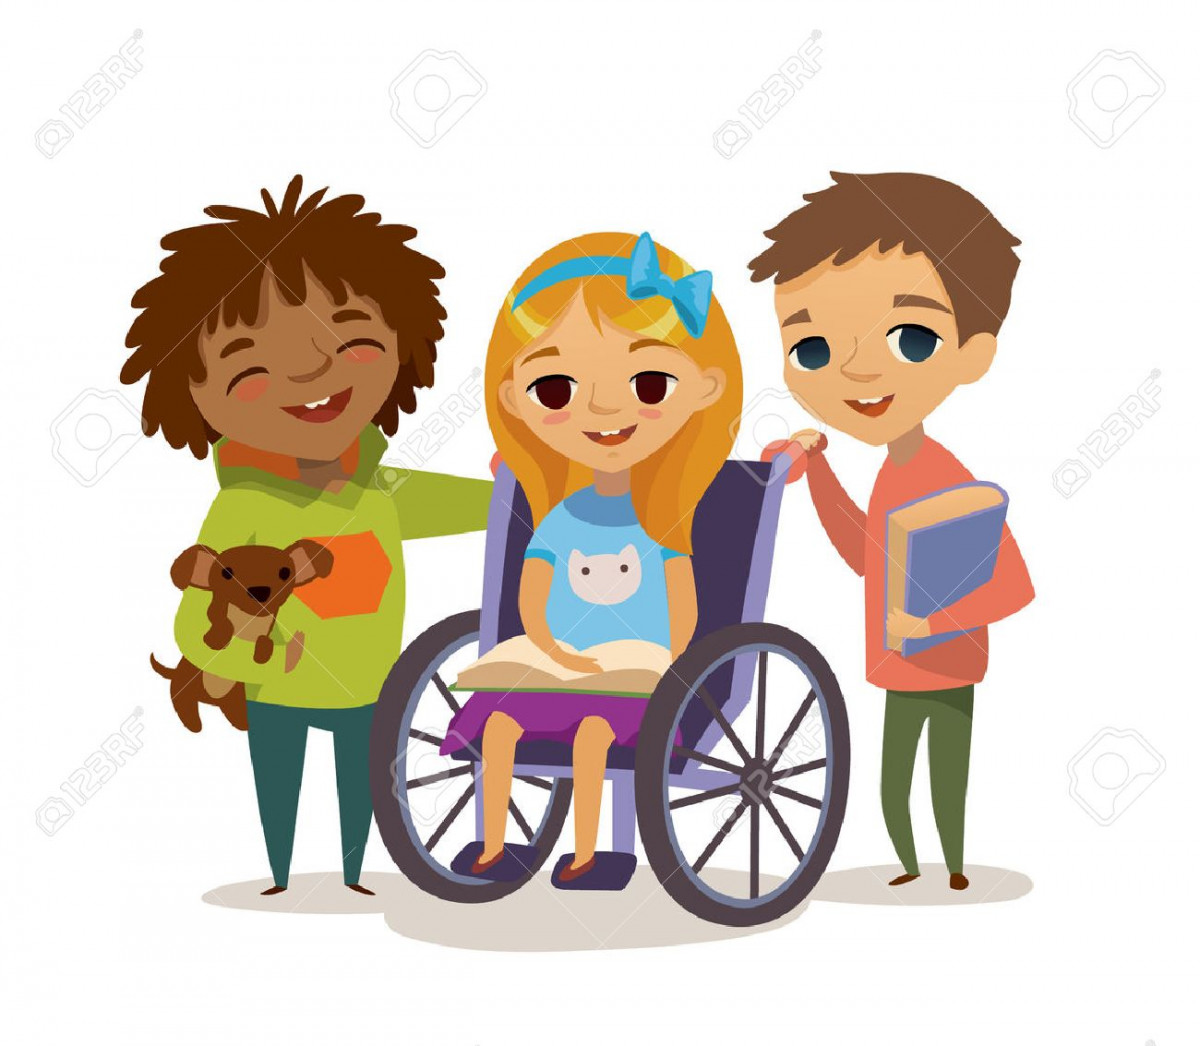 Толерантность к детям инвалидам